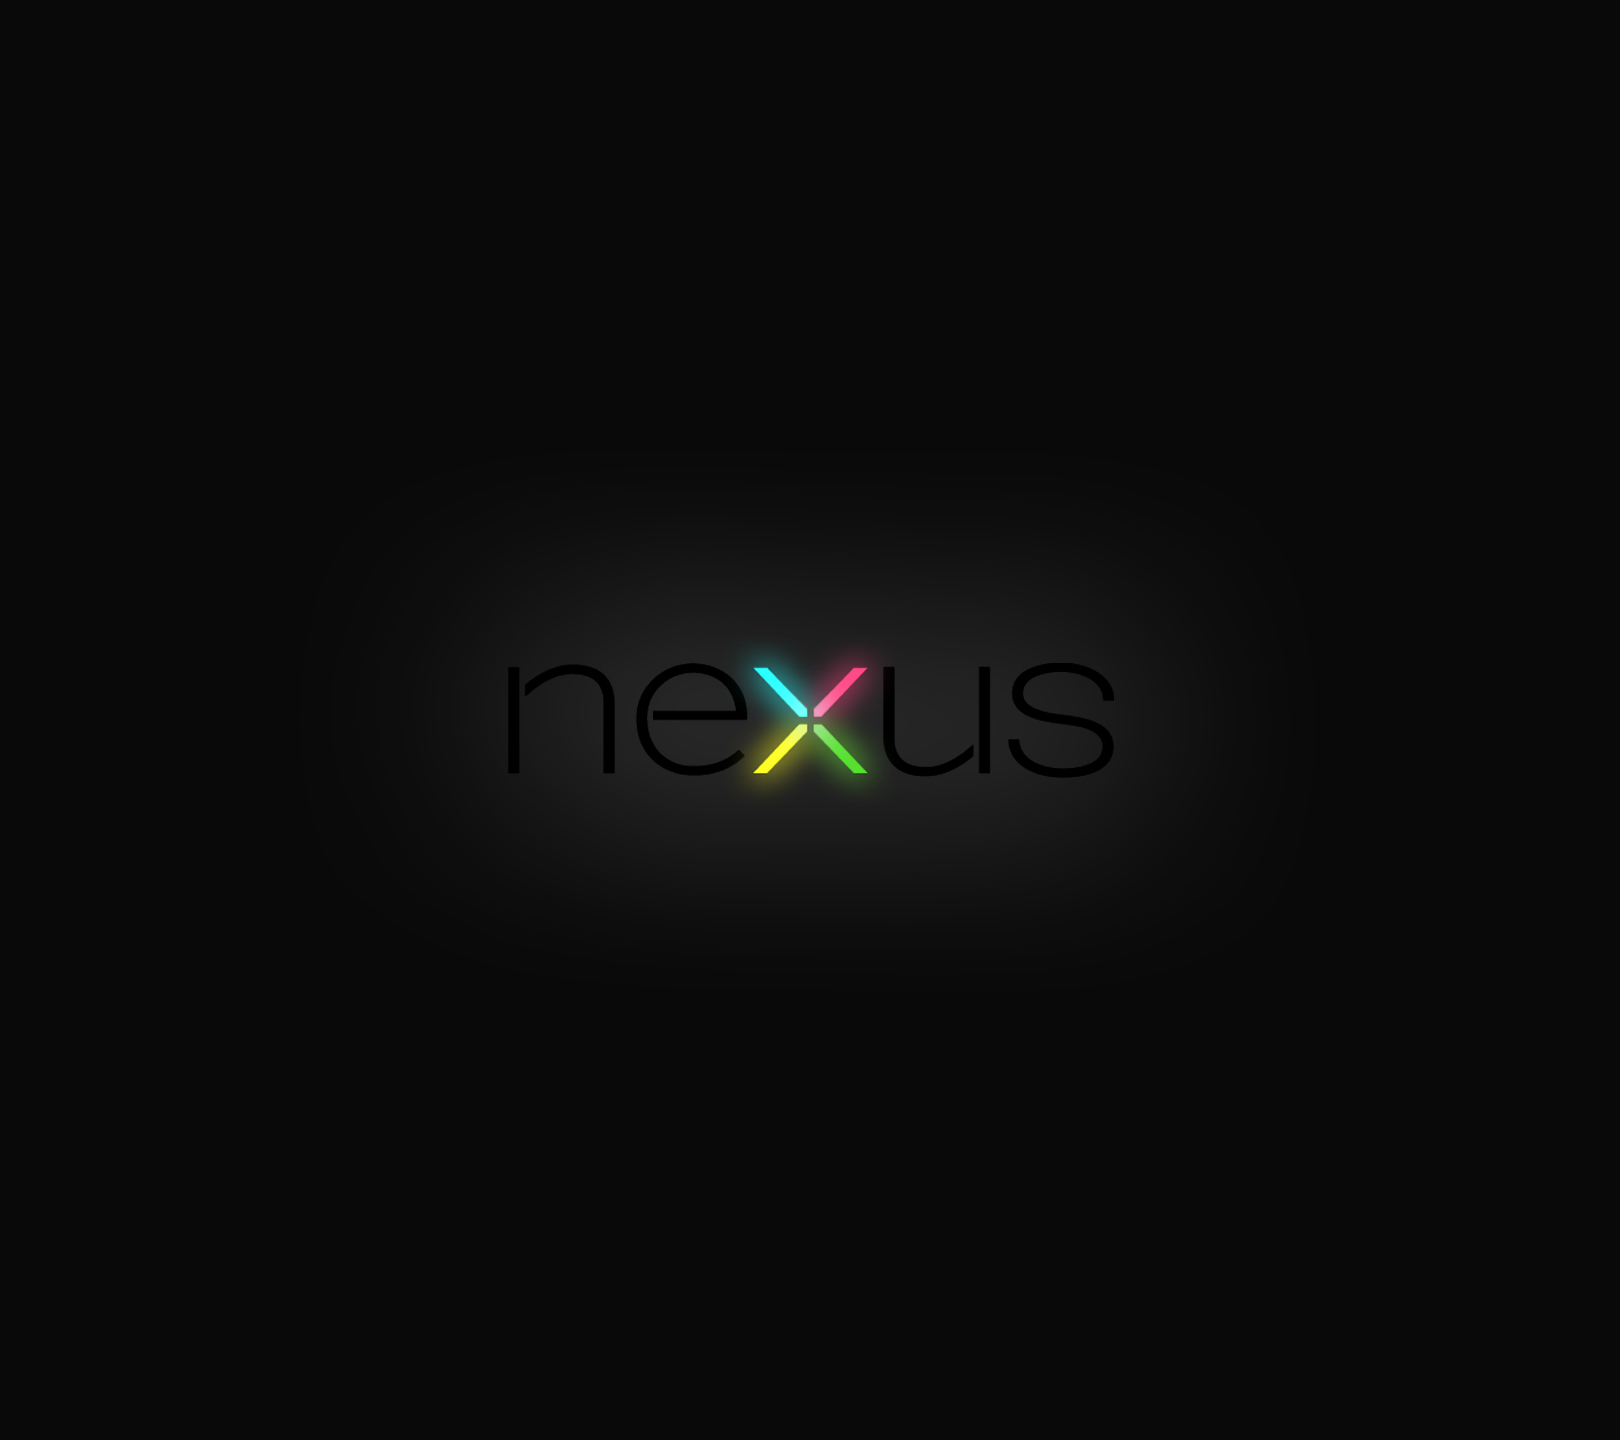 Nexus Background Wallpaper Desktop HD